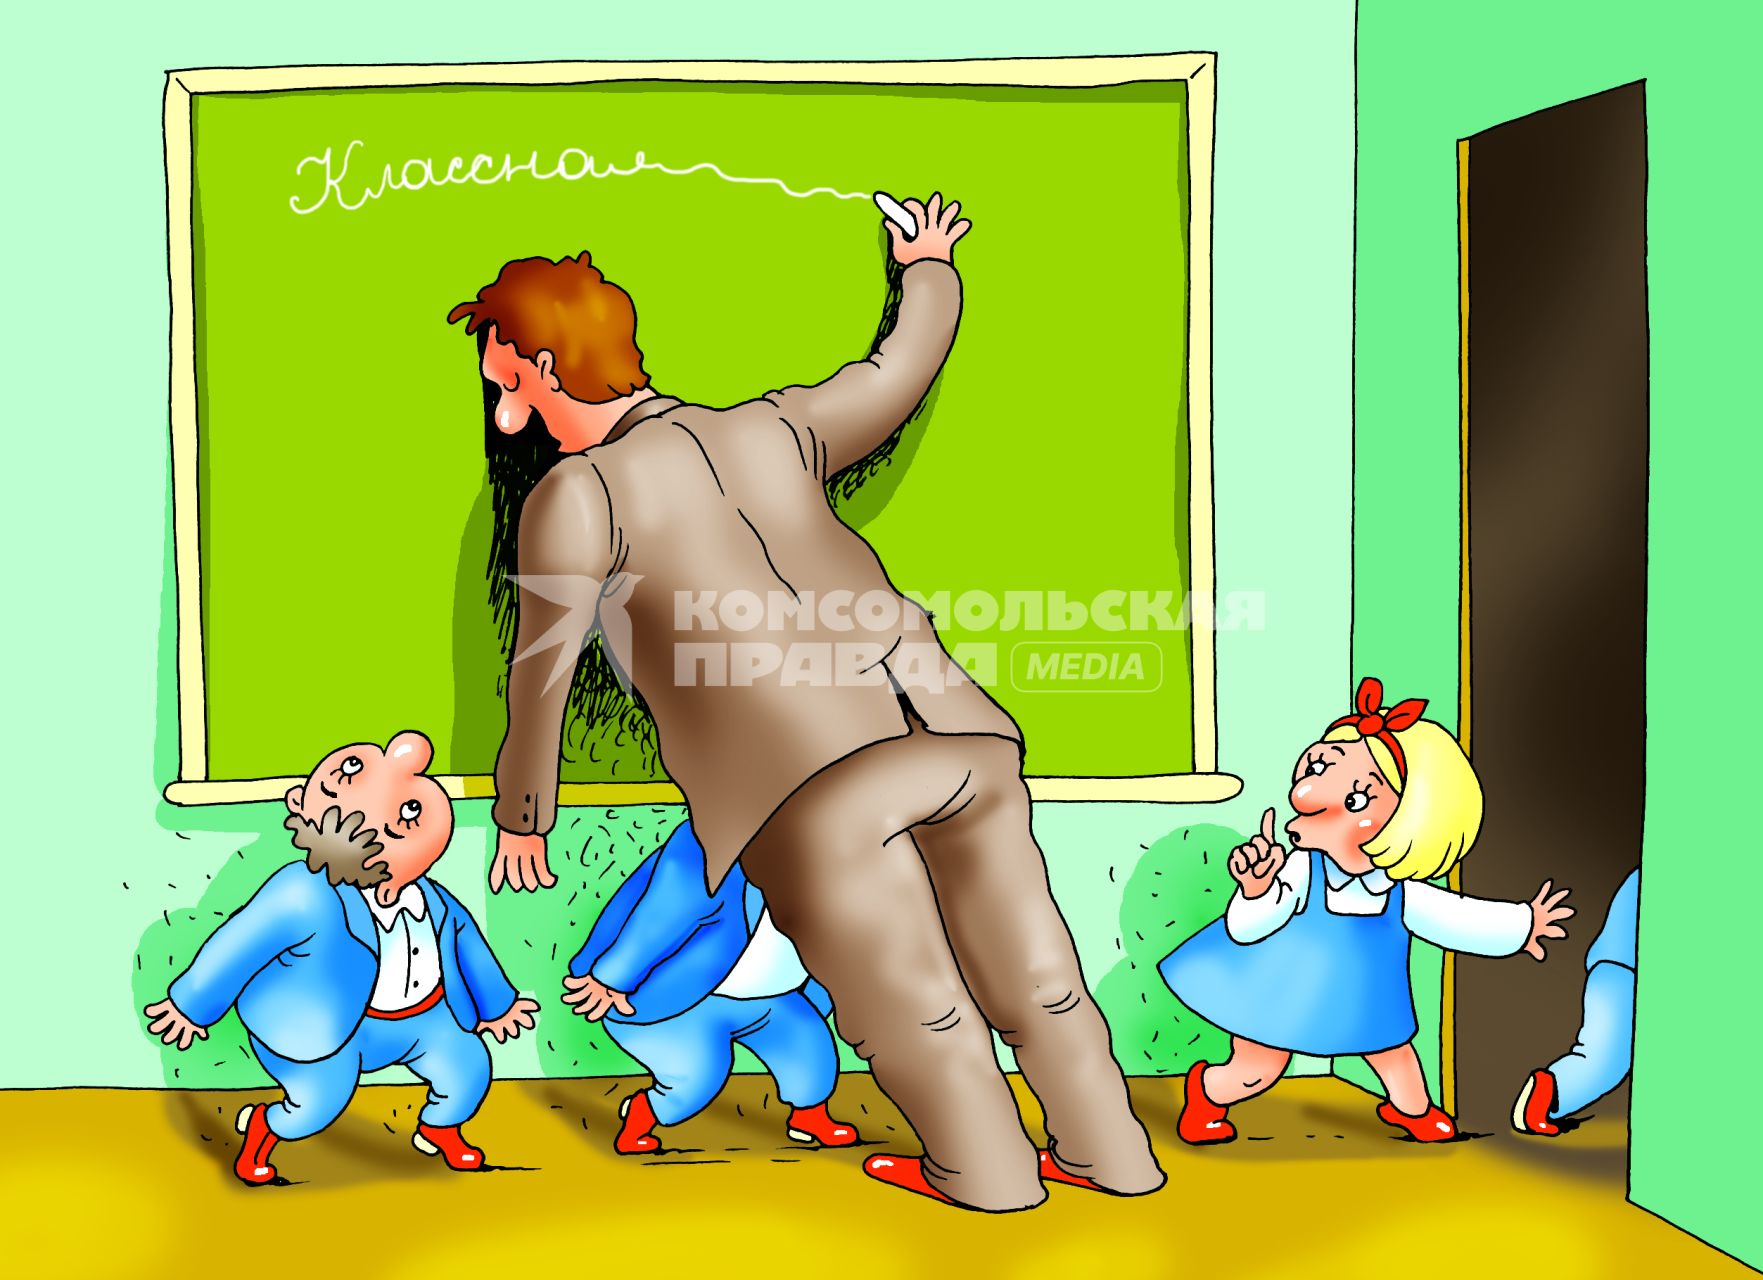 Карикатура на тему усталости школьных учителей.